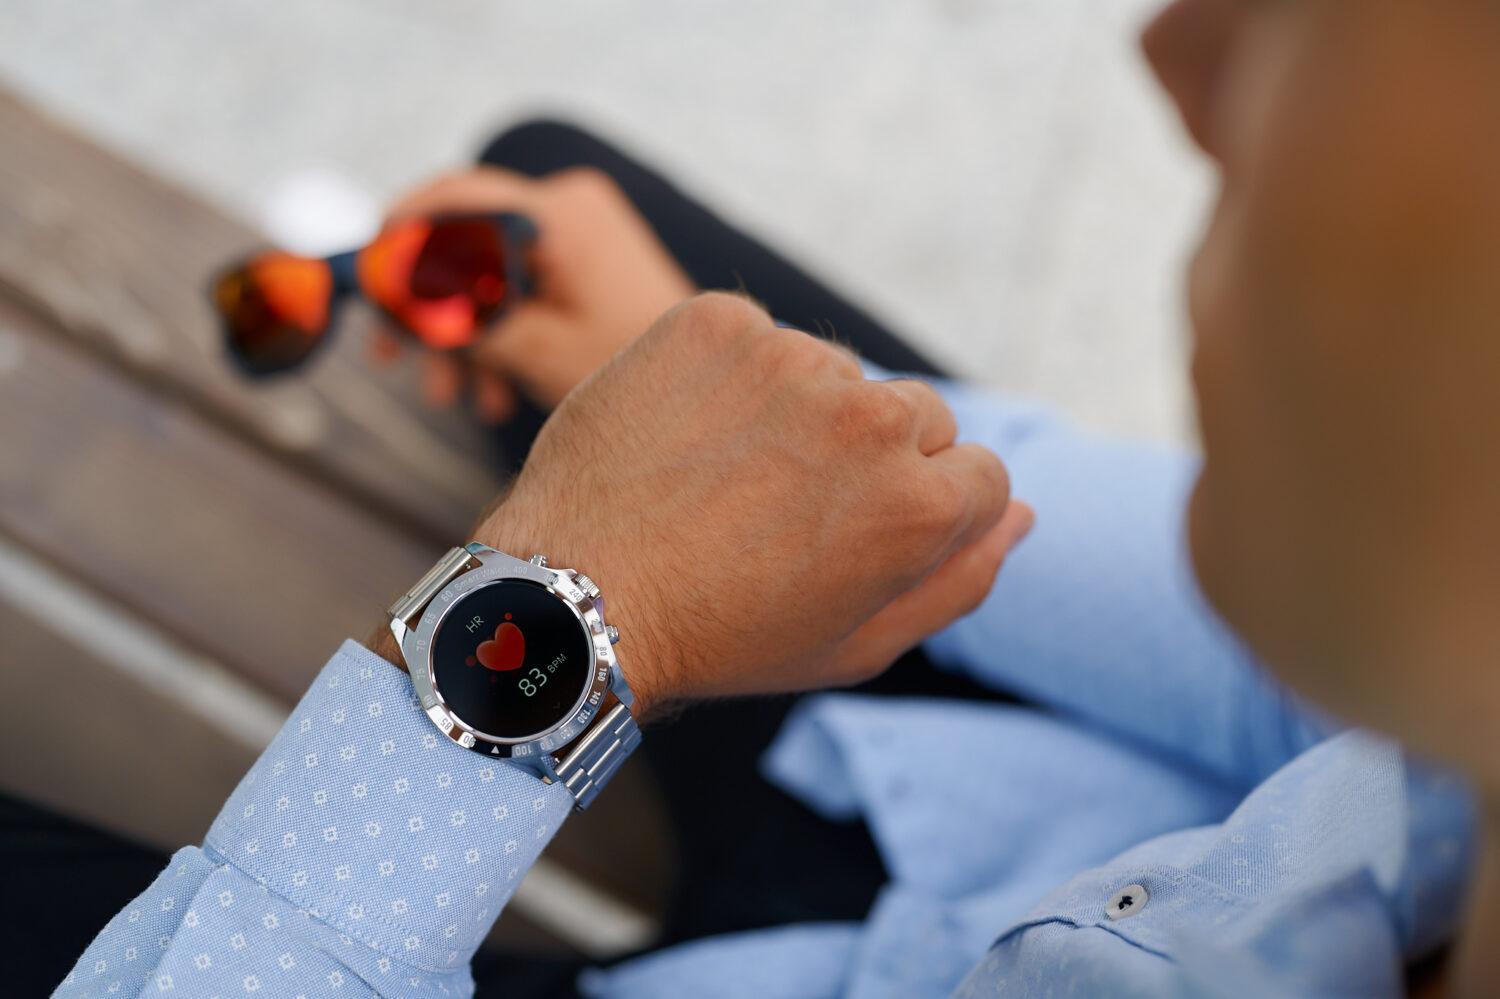 Zegarek męski Smartwatch Garett V8 Rt Srebrny, Stalowy